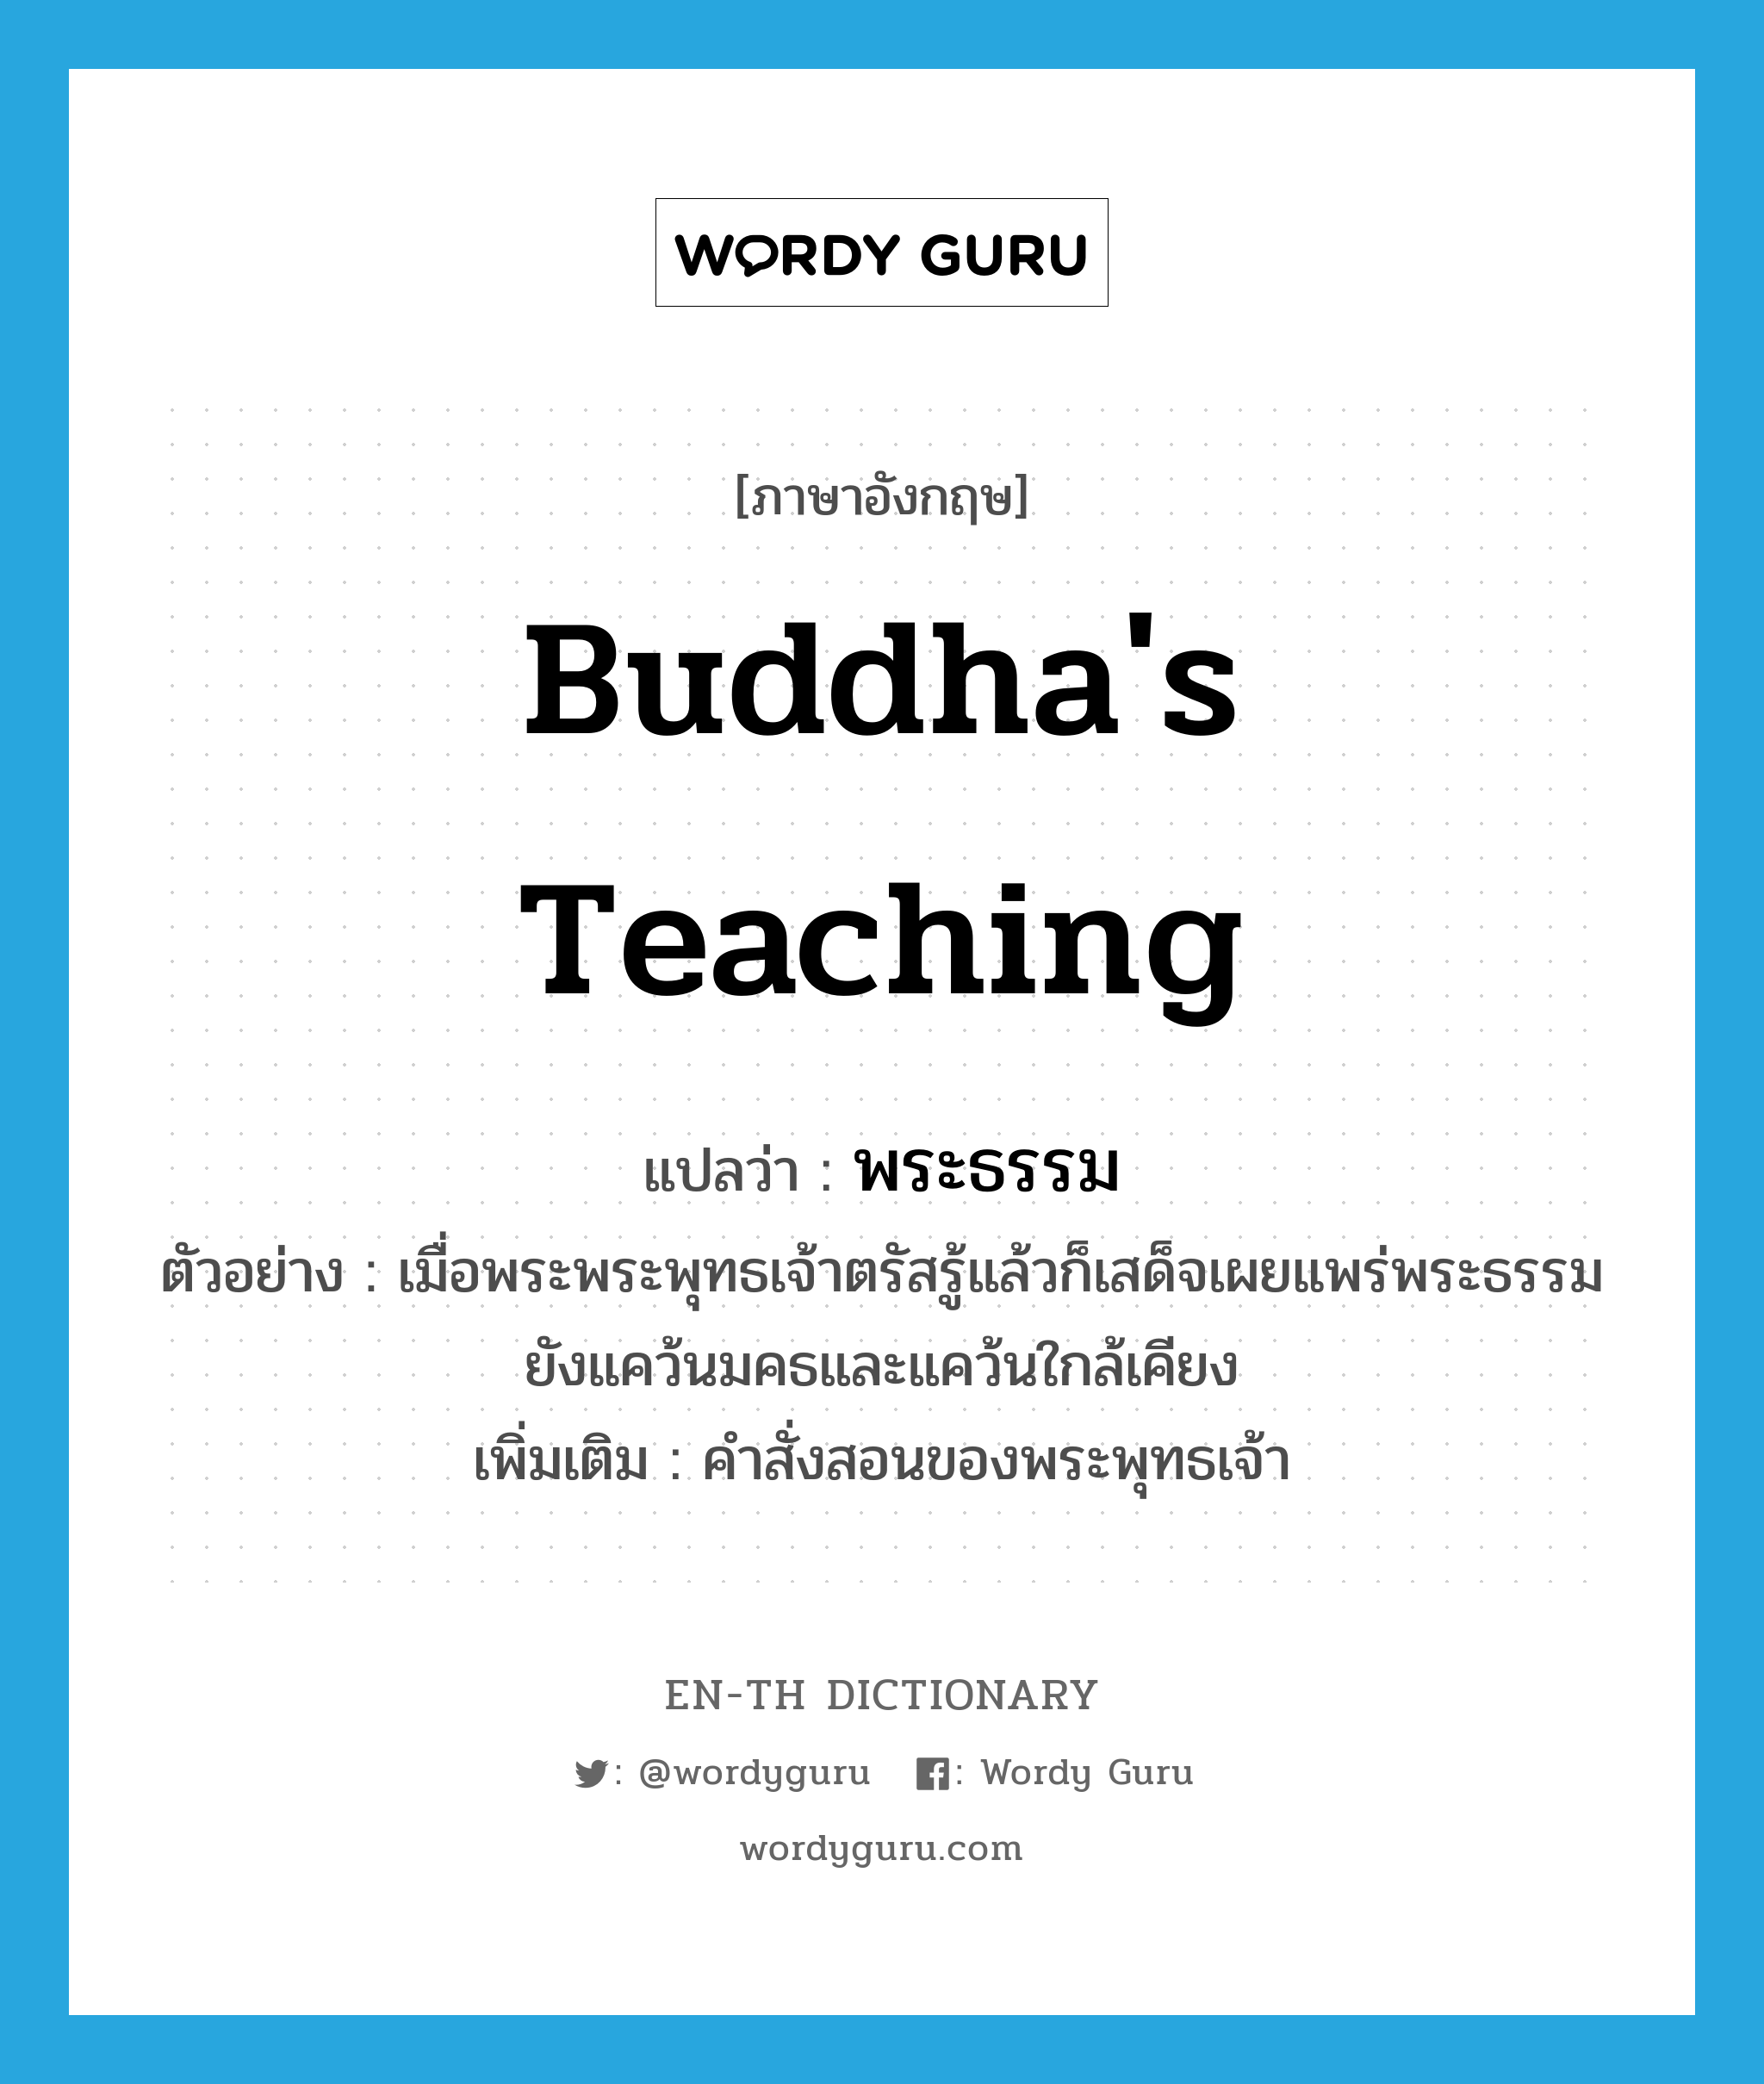 Buddha's teaching แปลว่า?, คำศัพท์ภาษาอังกฤษ Buddha's teaching แปลว่า พระธรรม ประเภท N ตัวอย่าง เมื่อพระพระพุทธเจ้าตรัสรู้แล้วก็เสด็จเผยแพร่พระธรรมยังแคว้นมคธและแคว้นใกล้เคียง เพิ่มเติม คำสั่งสอนของพระพุทธเจ้า หมวด N